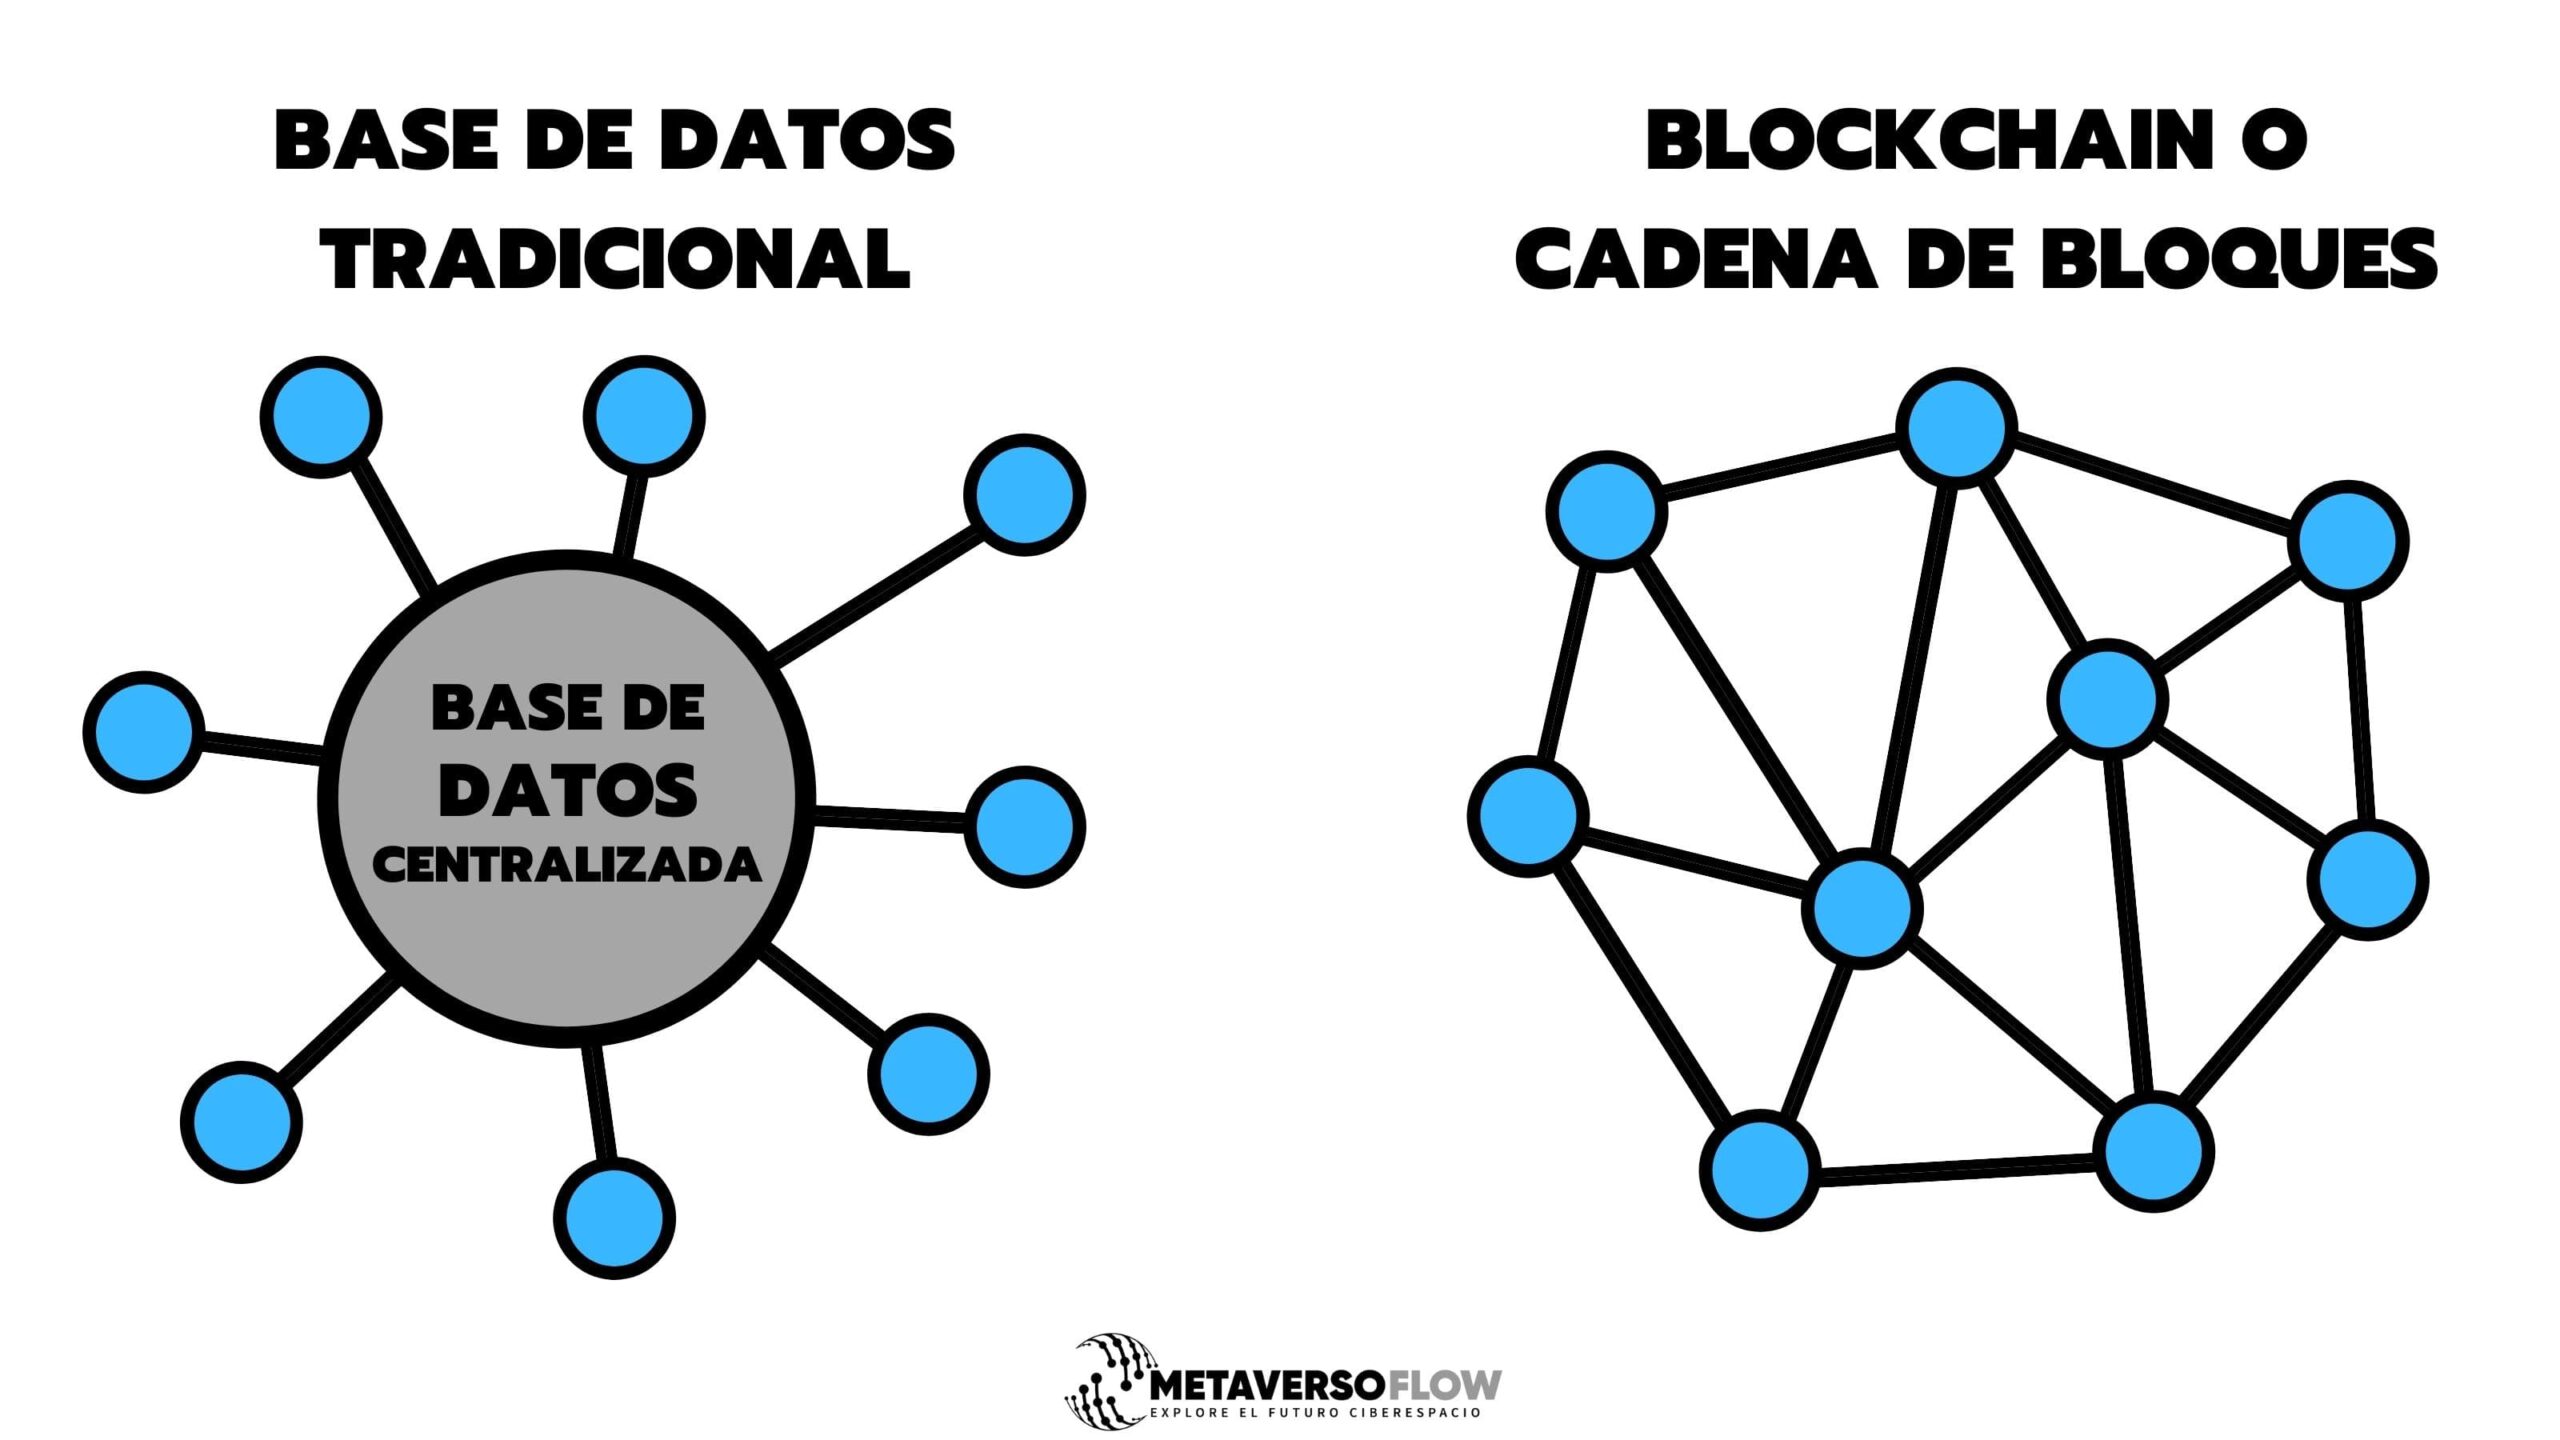 Base de datos tradicional vs Blockchain